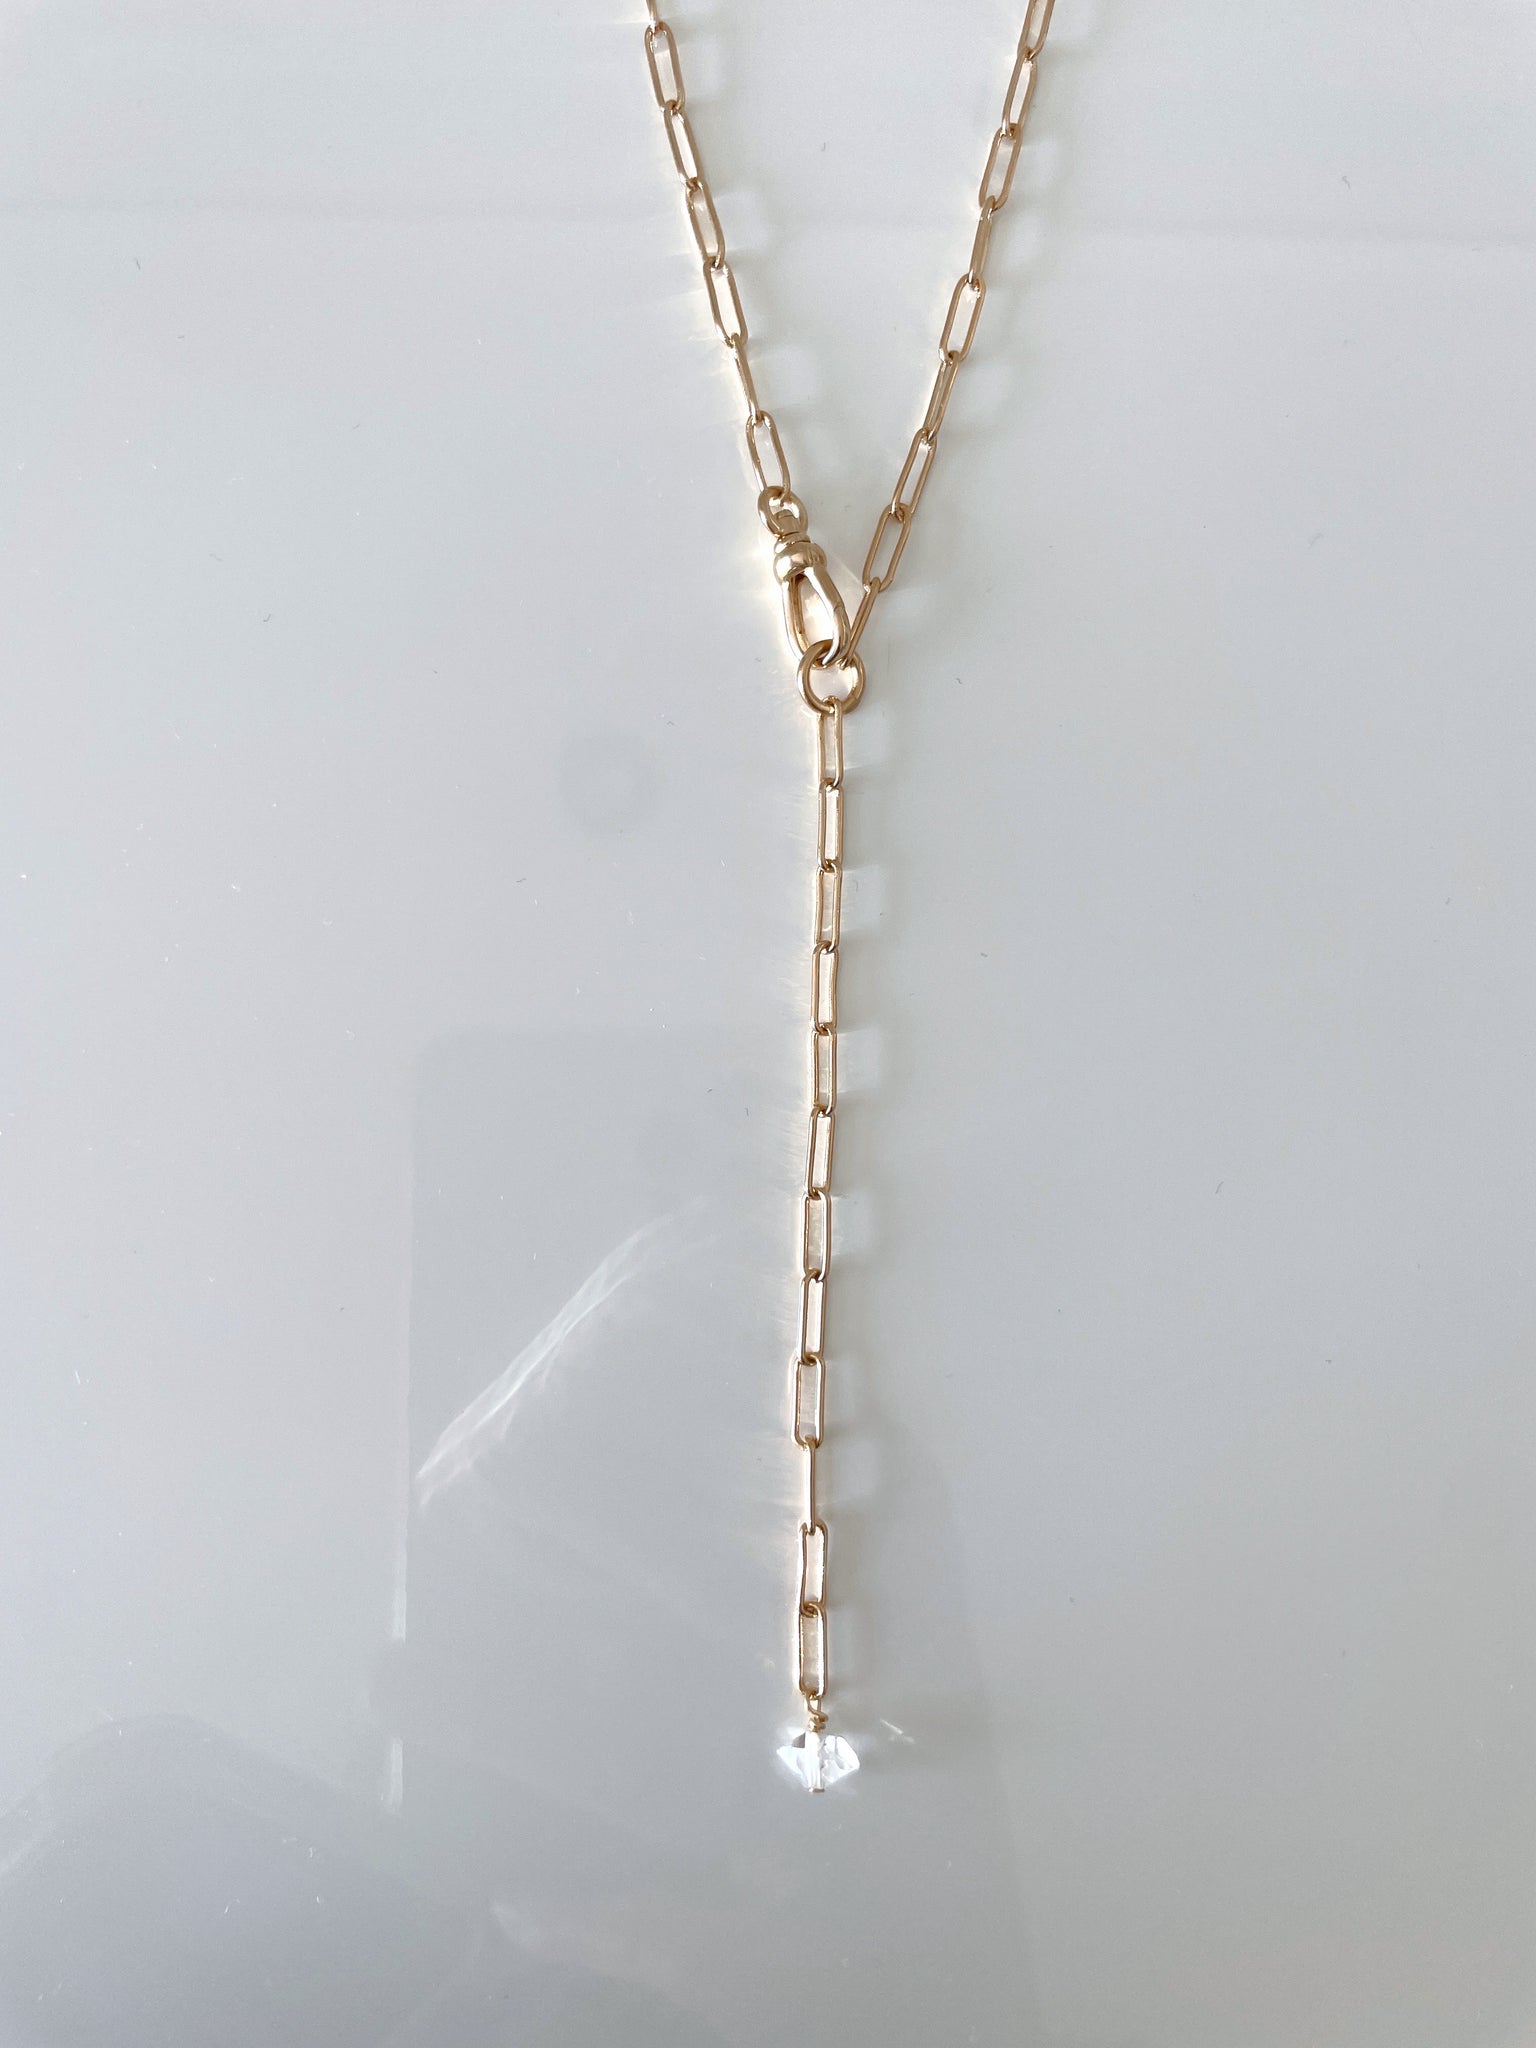 Onaya necklace/bracelet